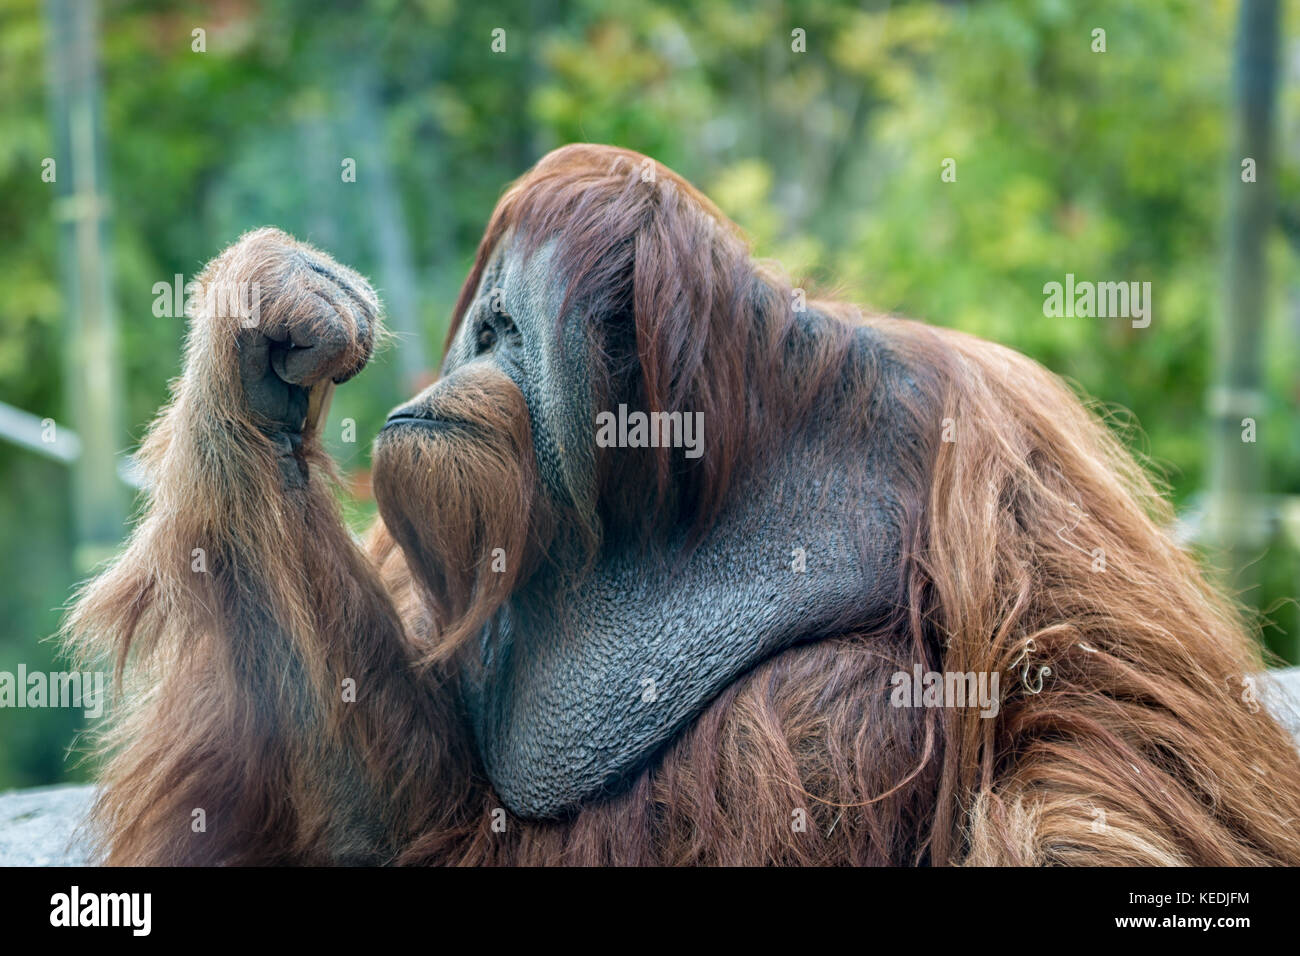 Orang-utan (APE) Porträt mit seinen Augen, wenn man in seine geschlossene Hand mit unscharfen Hintergrund Stockfoto